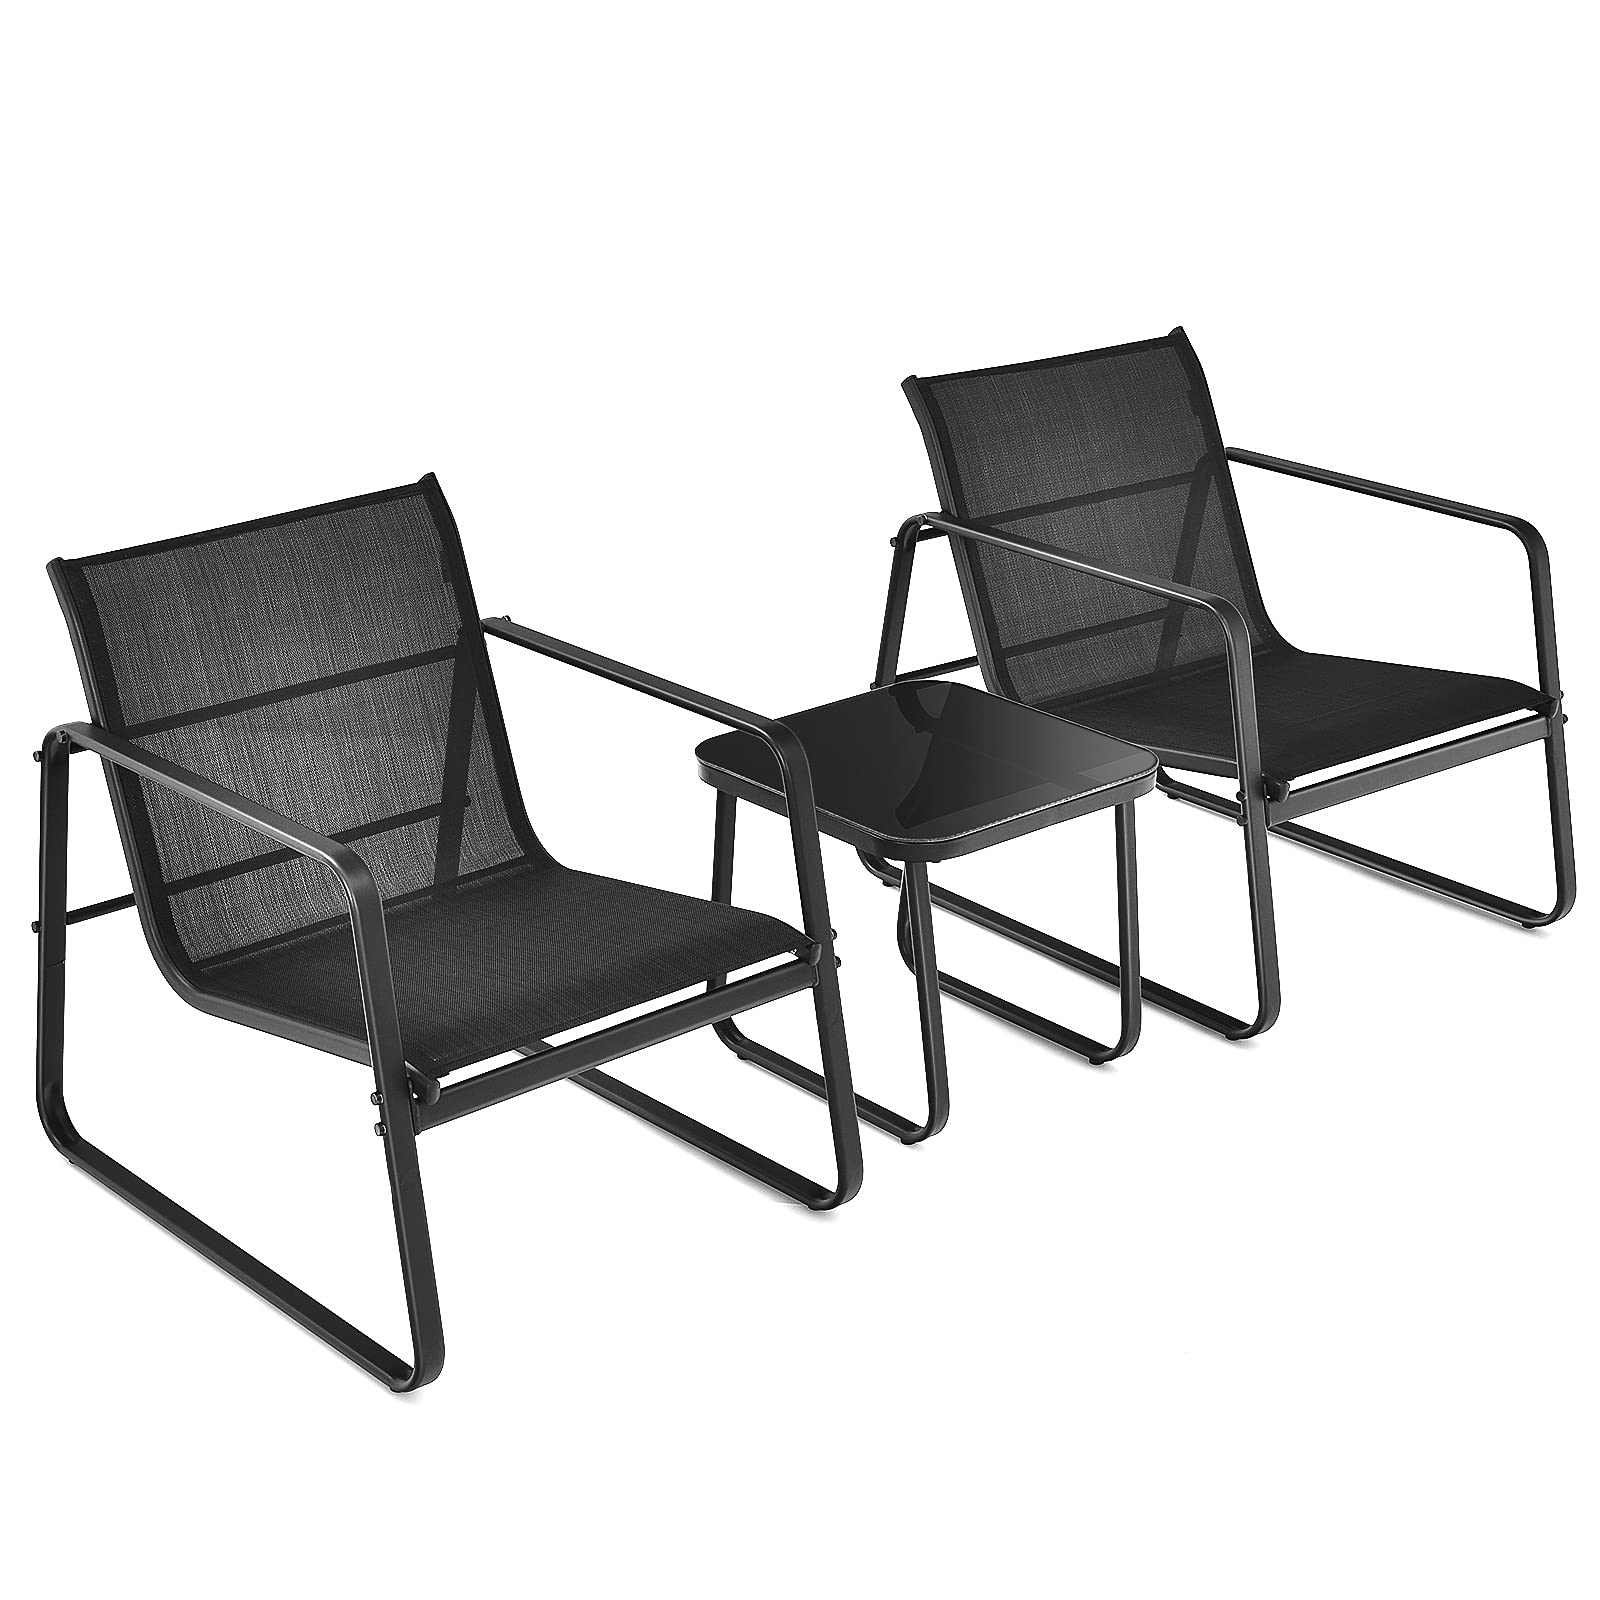 Giantex 3 Pieces Patio Furniture Set, Outdoor Bistro Set with Rustproof Steel Frame